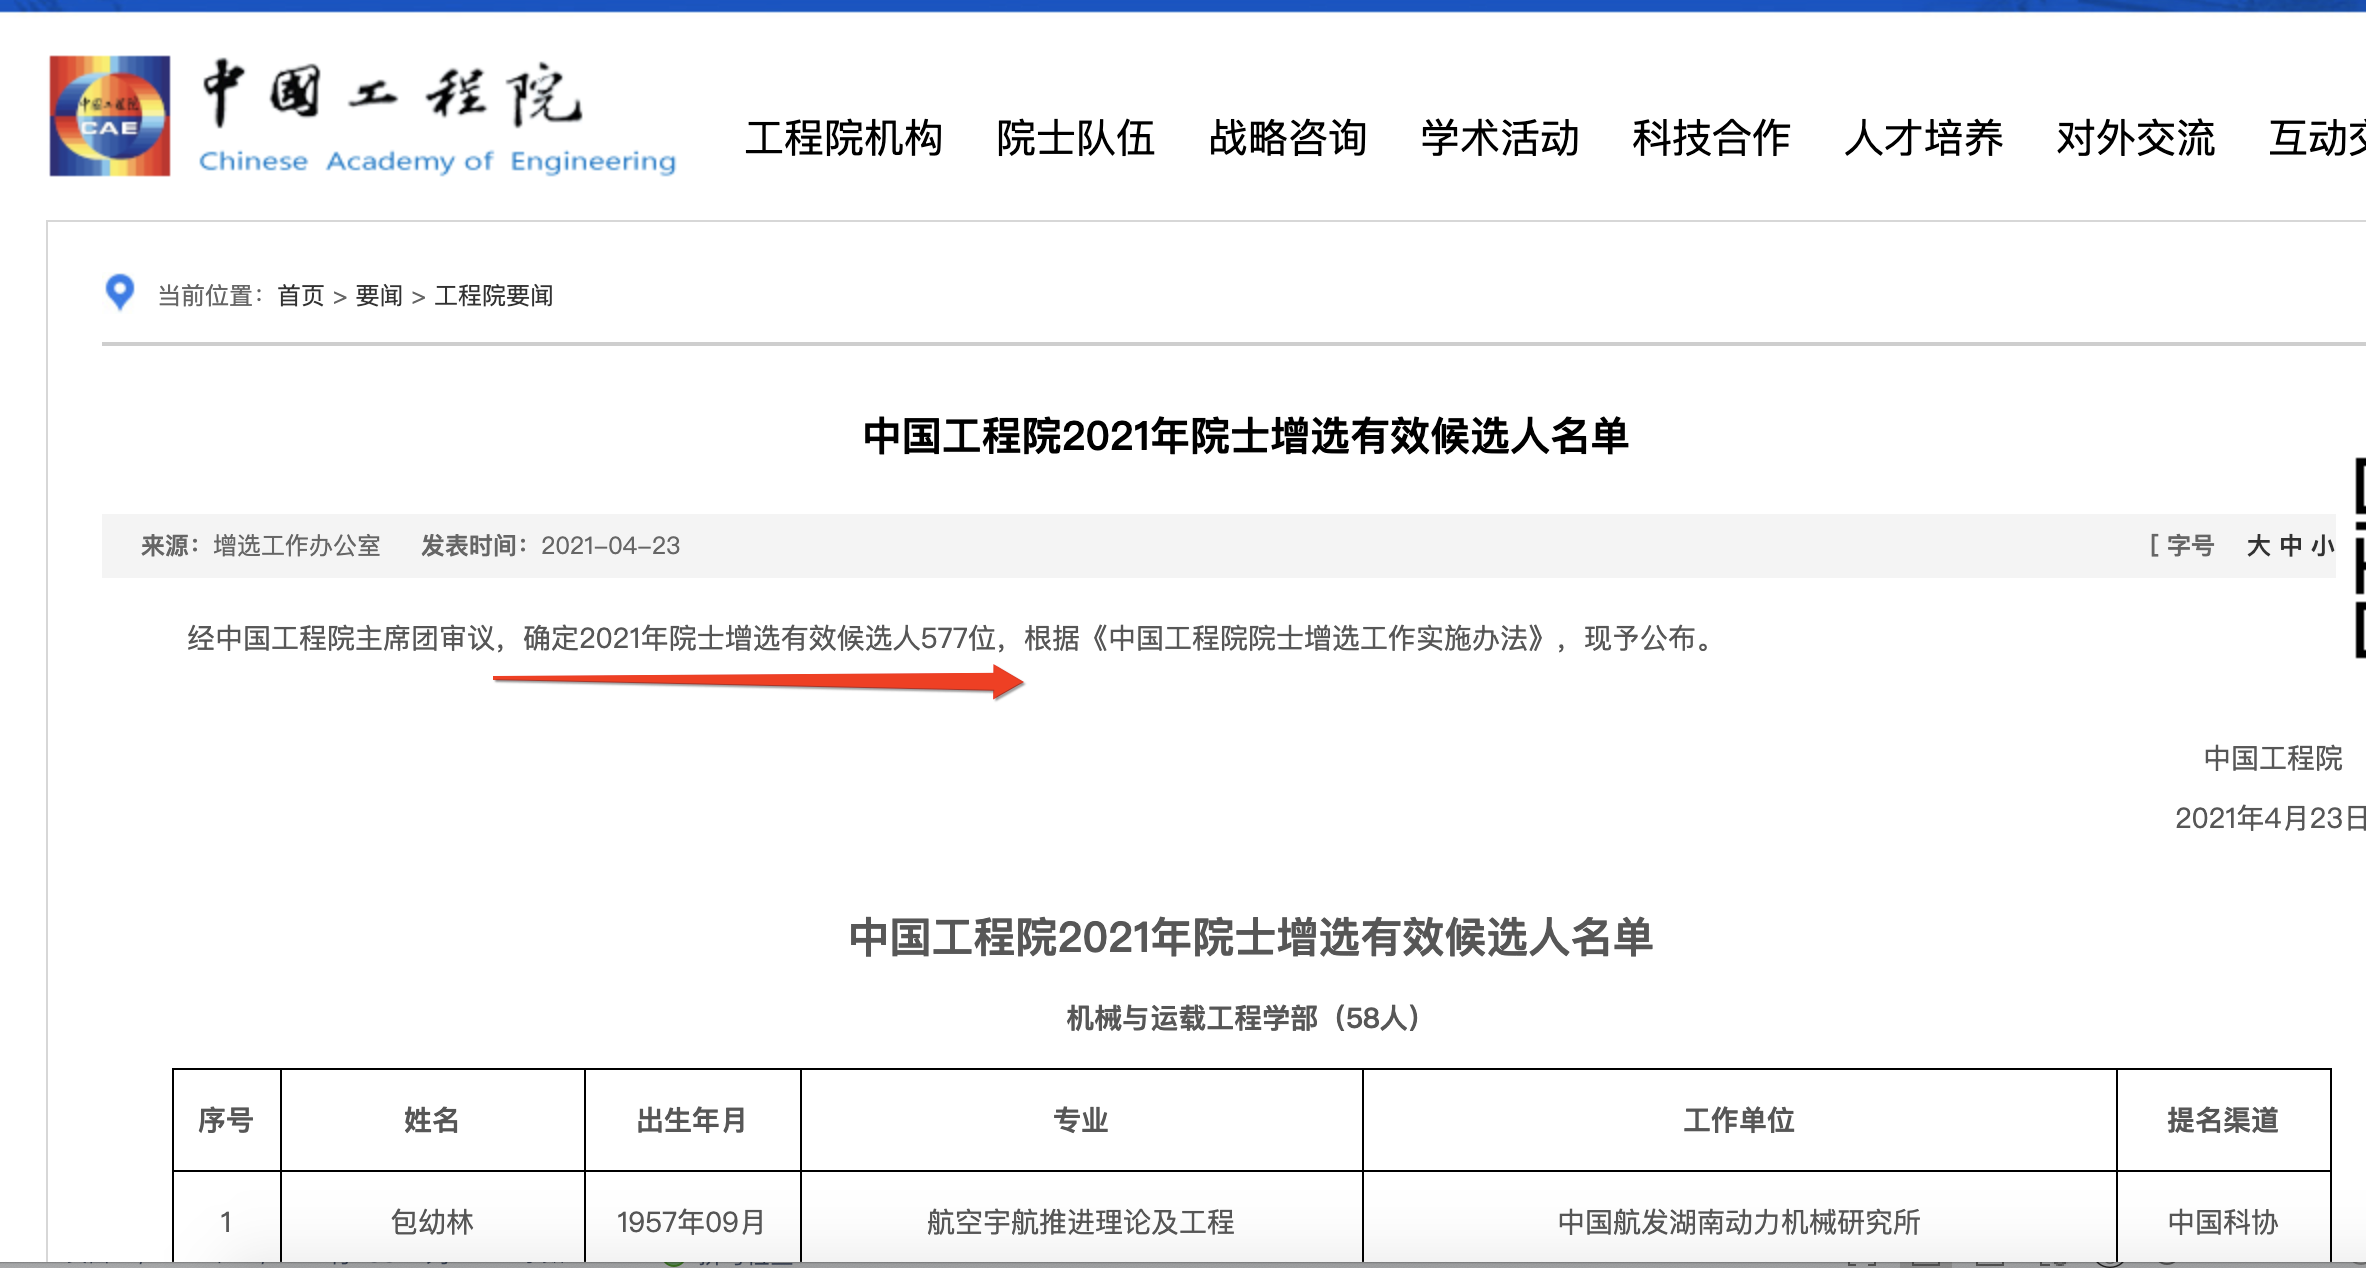 中国工程院2021年院士增选577位有效候选人名单公布，其<font color="red">中医药</font>卫生部84位有效候选人